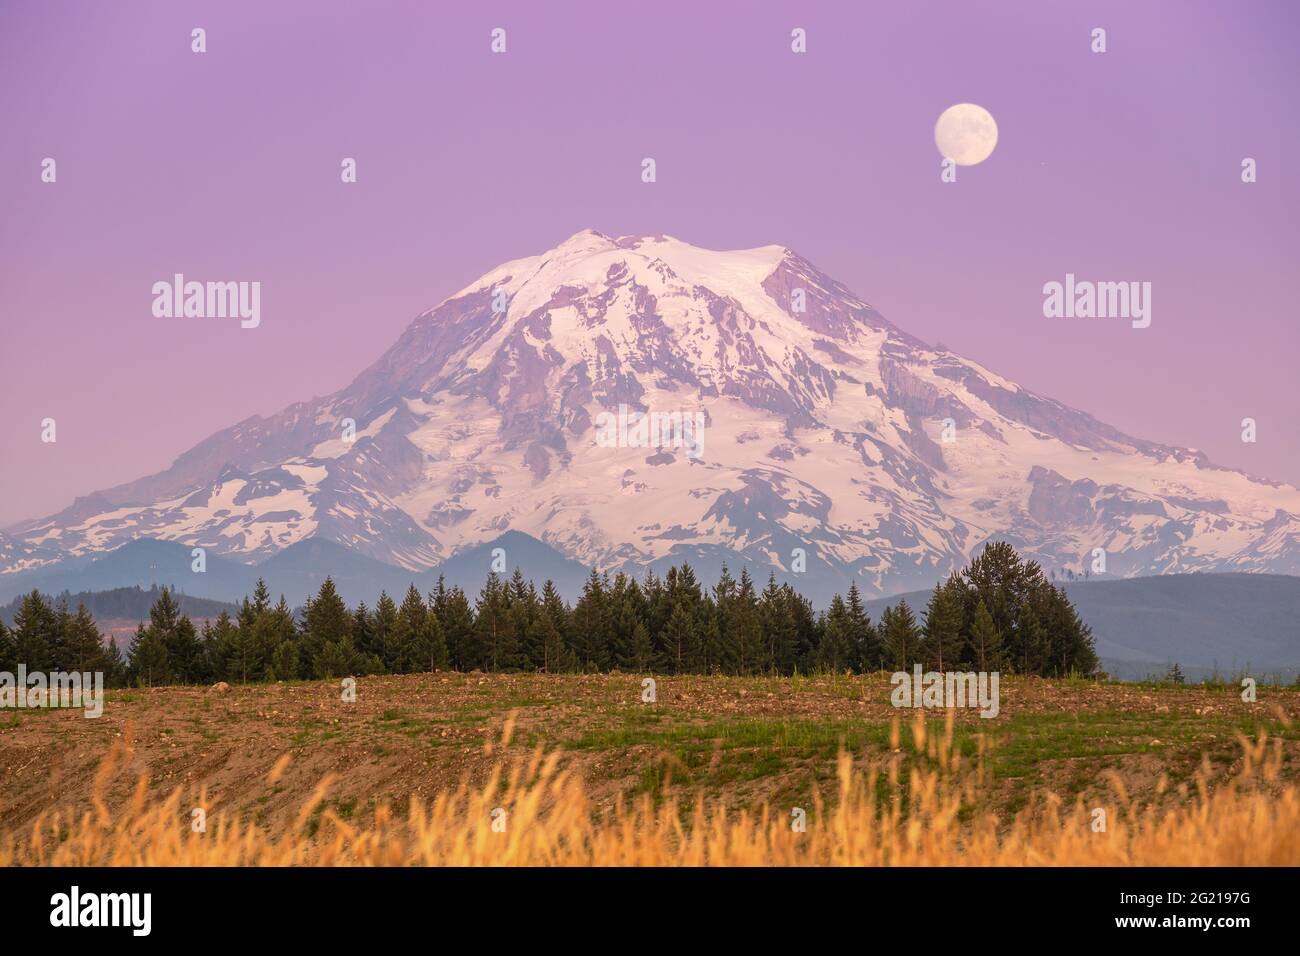 Mt. Rainier au coucher du soleil avec lune dans le ciel violet Banque D'Images